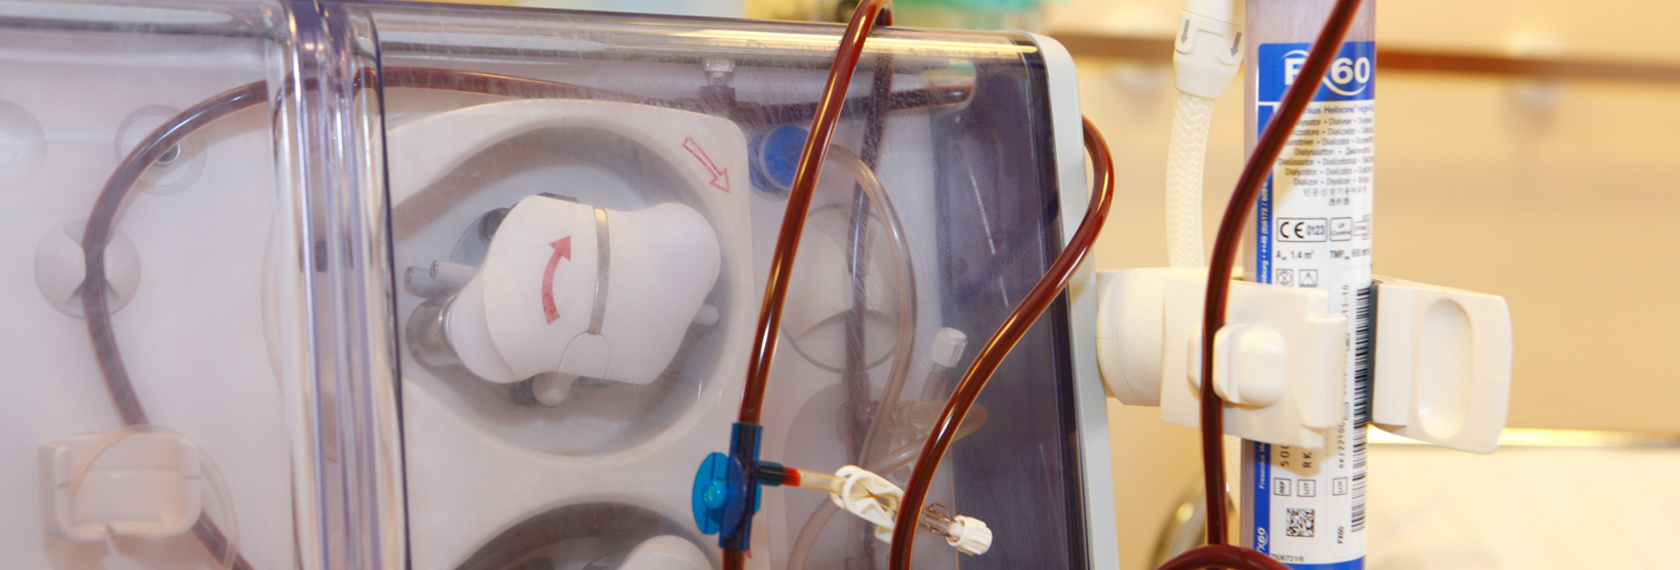 Die Dialyse-Einheit verfügt über moderne Geräte zur Blutwäsche, um den Bedürfnissen der Patienten gerecht zu werden